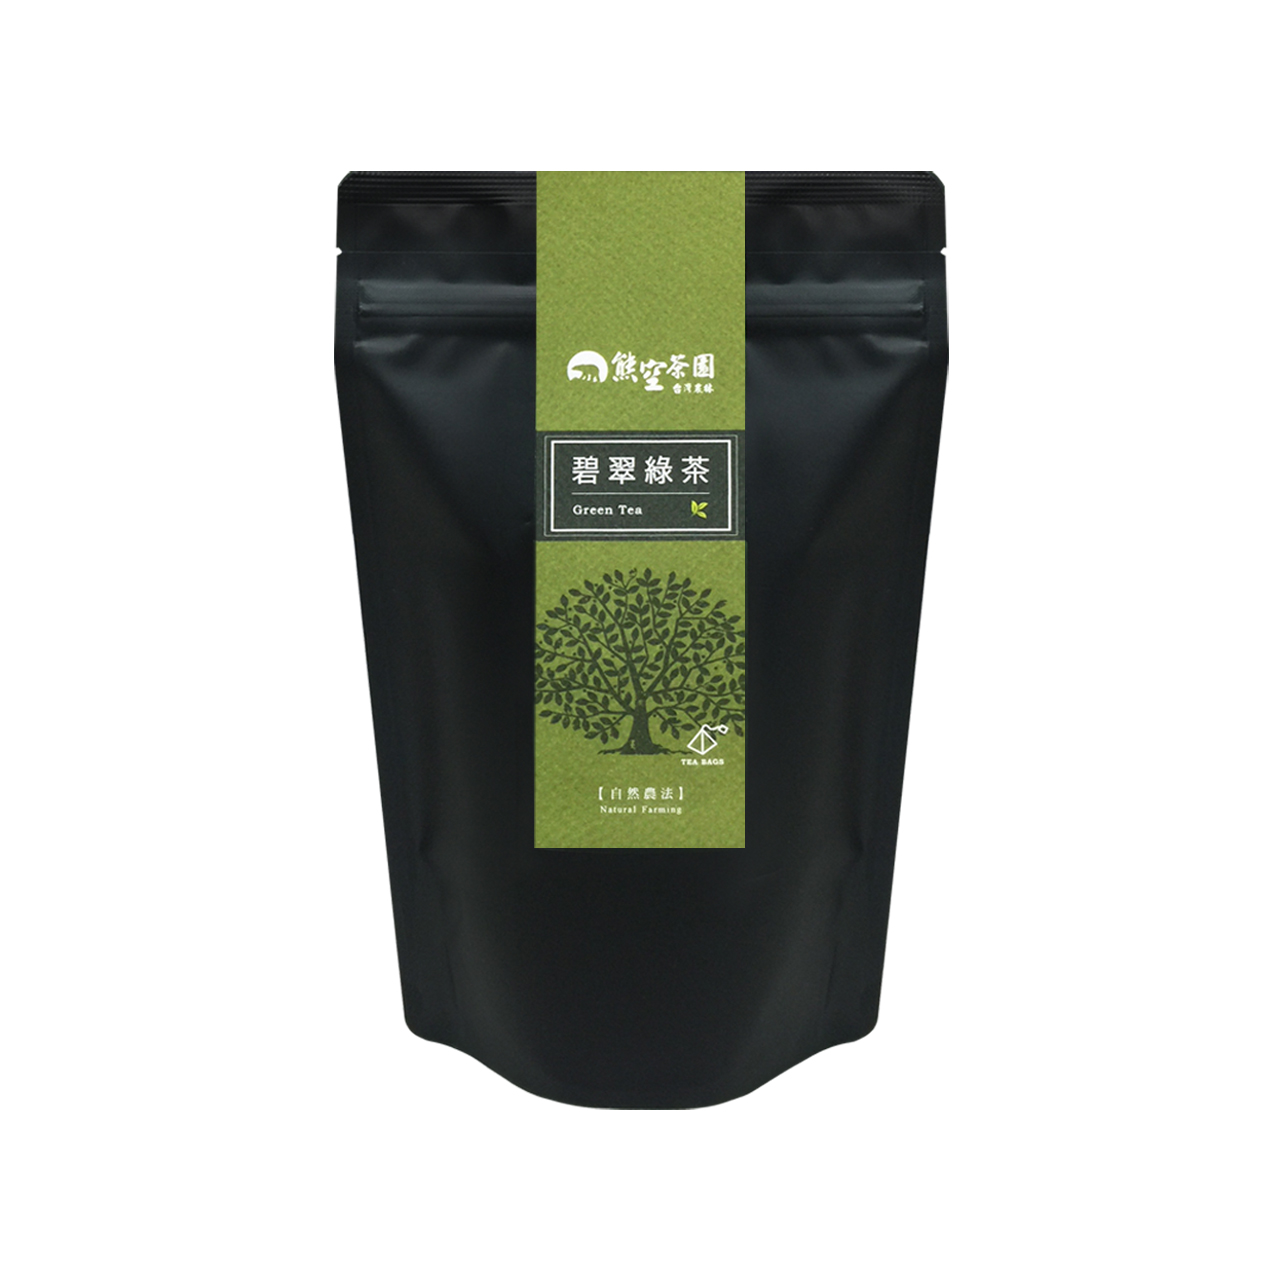 熊空-碧翠绿茶立体茶包(自然农法)